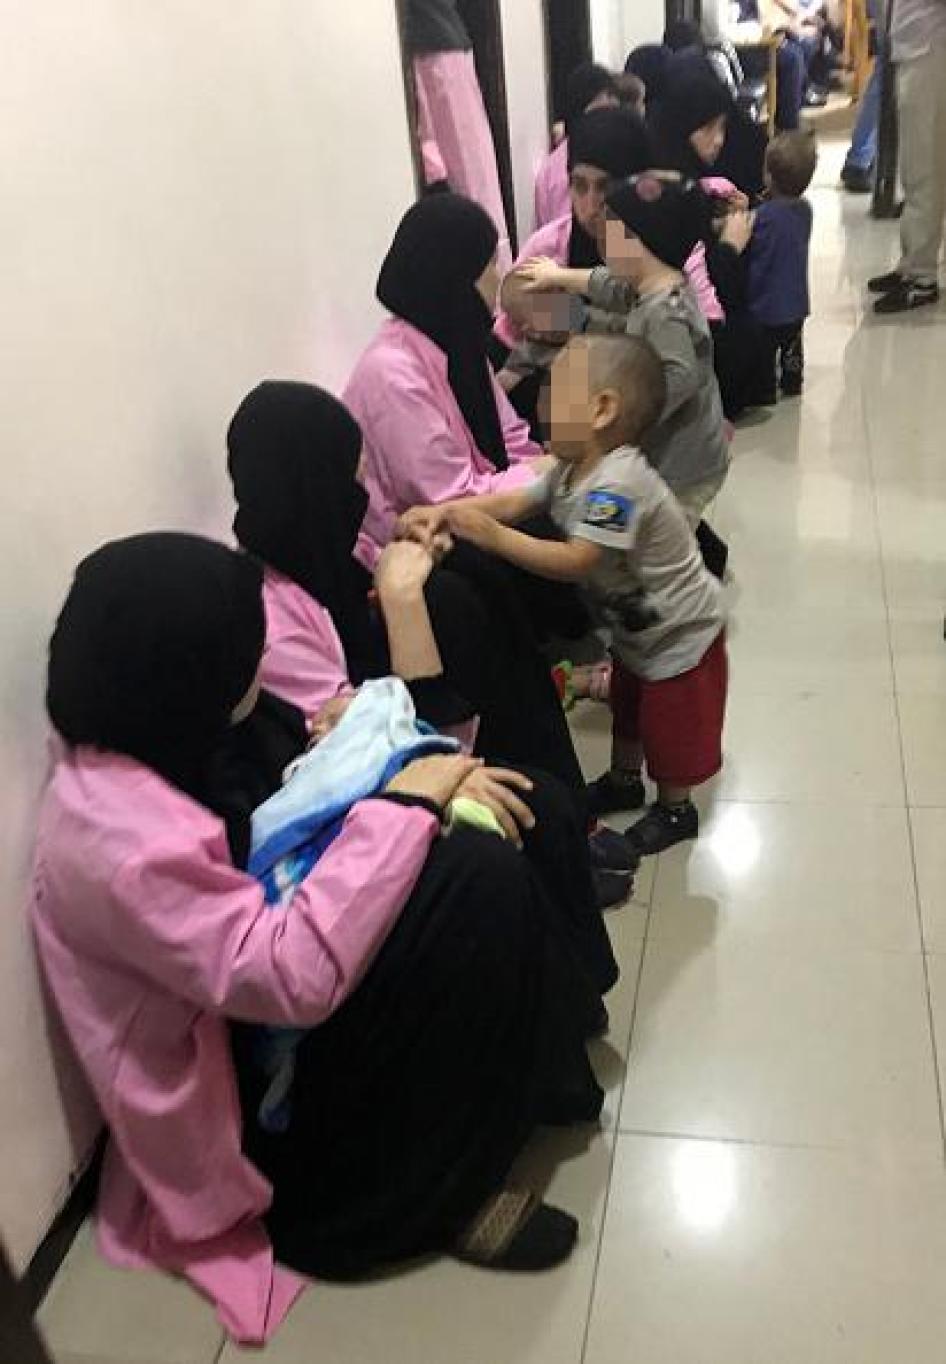 Des femmes russes, condamnées à la prison à vie pour appartenance à l'Etat islamique, assises par terre avec leurs enfants dans un couloir du Tribunal pénal central de Bagdad, le 29 avril 2018. © 2018 Ammar Karim/AFP/Getty Images